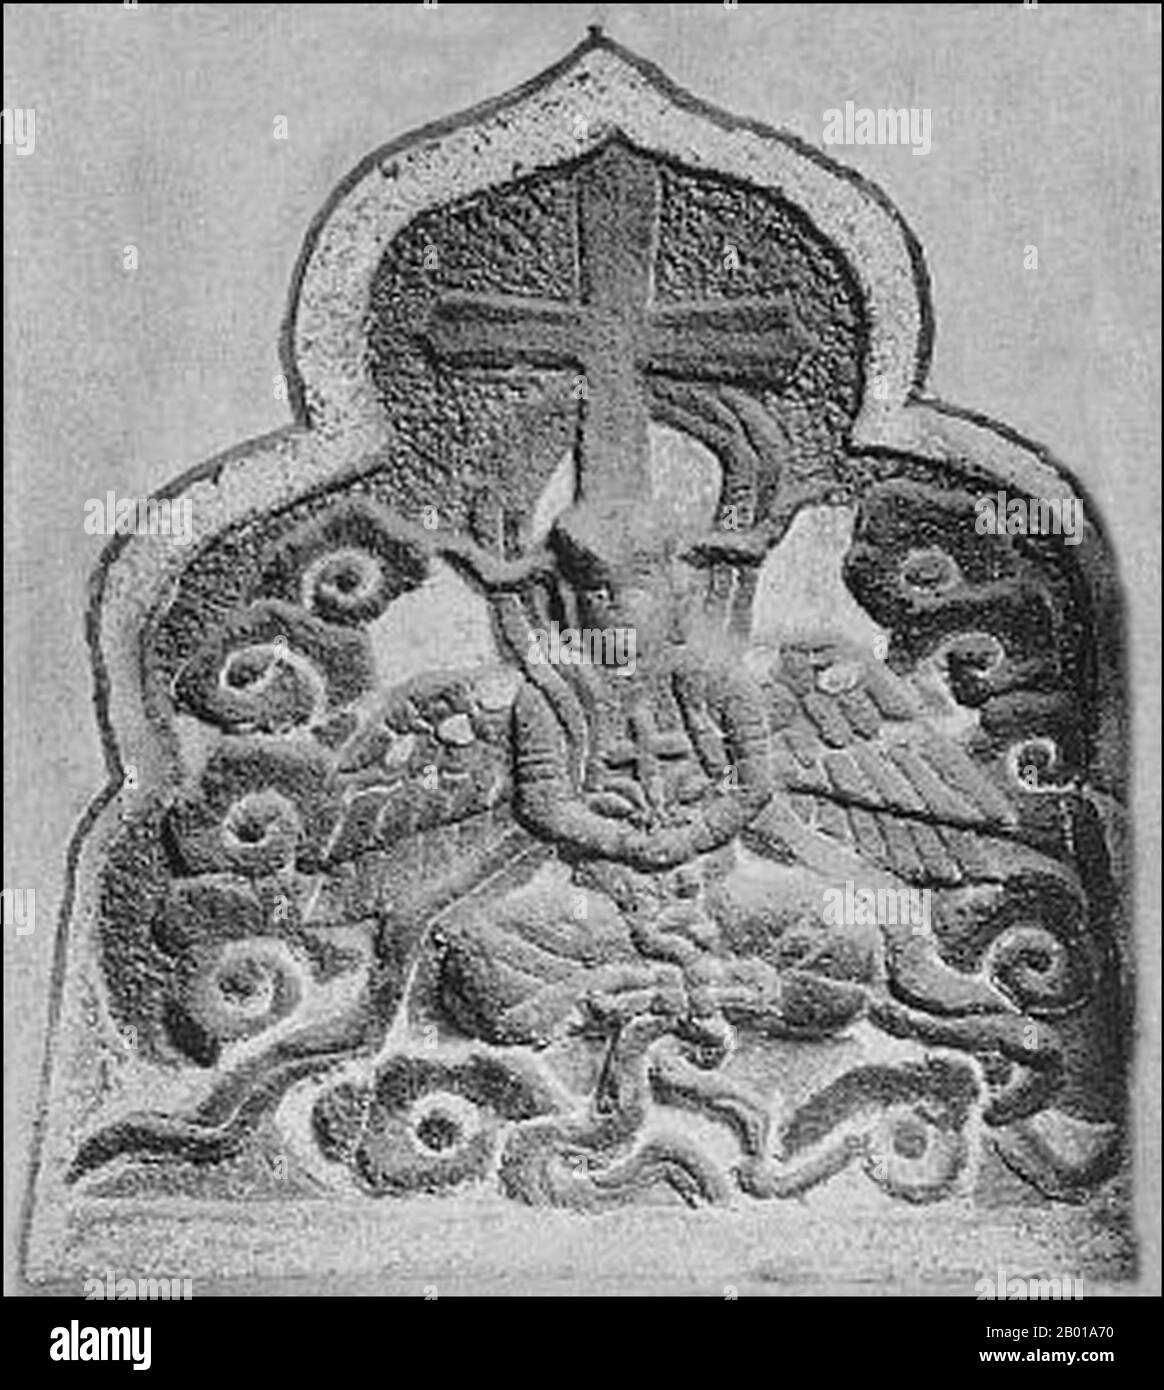 China: Nestorianischer Grabstein mit einem Kruzifix und einem vierflügeligen Engel mit einem Kreuz auf dem Lotus-Symbol in einem daoistischen Tempel in Quanzhou. Foto von Gustave Ecke (13. Juni 1896 - 17. Dezember 1971) (nicht urheberrechtlich geschützt), c. 1927. Quanzhou wurde 718 während der Tang Dynastie (618-907) gegründet. Damals war Guangzhou Chinas größter Seehafen, aber dieser Status würde später von Quanzhou übertroffen werden. Während der Song Dynastie (960-1279) und der Yuan Dynastie (127-1368) war Quanzhou einer der größten Seehäfen der Welt und beherbergt eine große Gemeinschaft von ausländischen Einwohnern aus der ganzen eurasischen Welt. Stockfoto